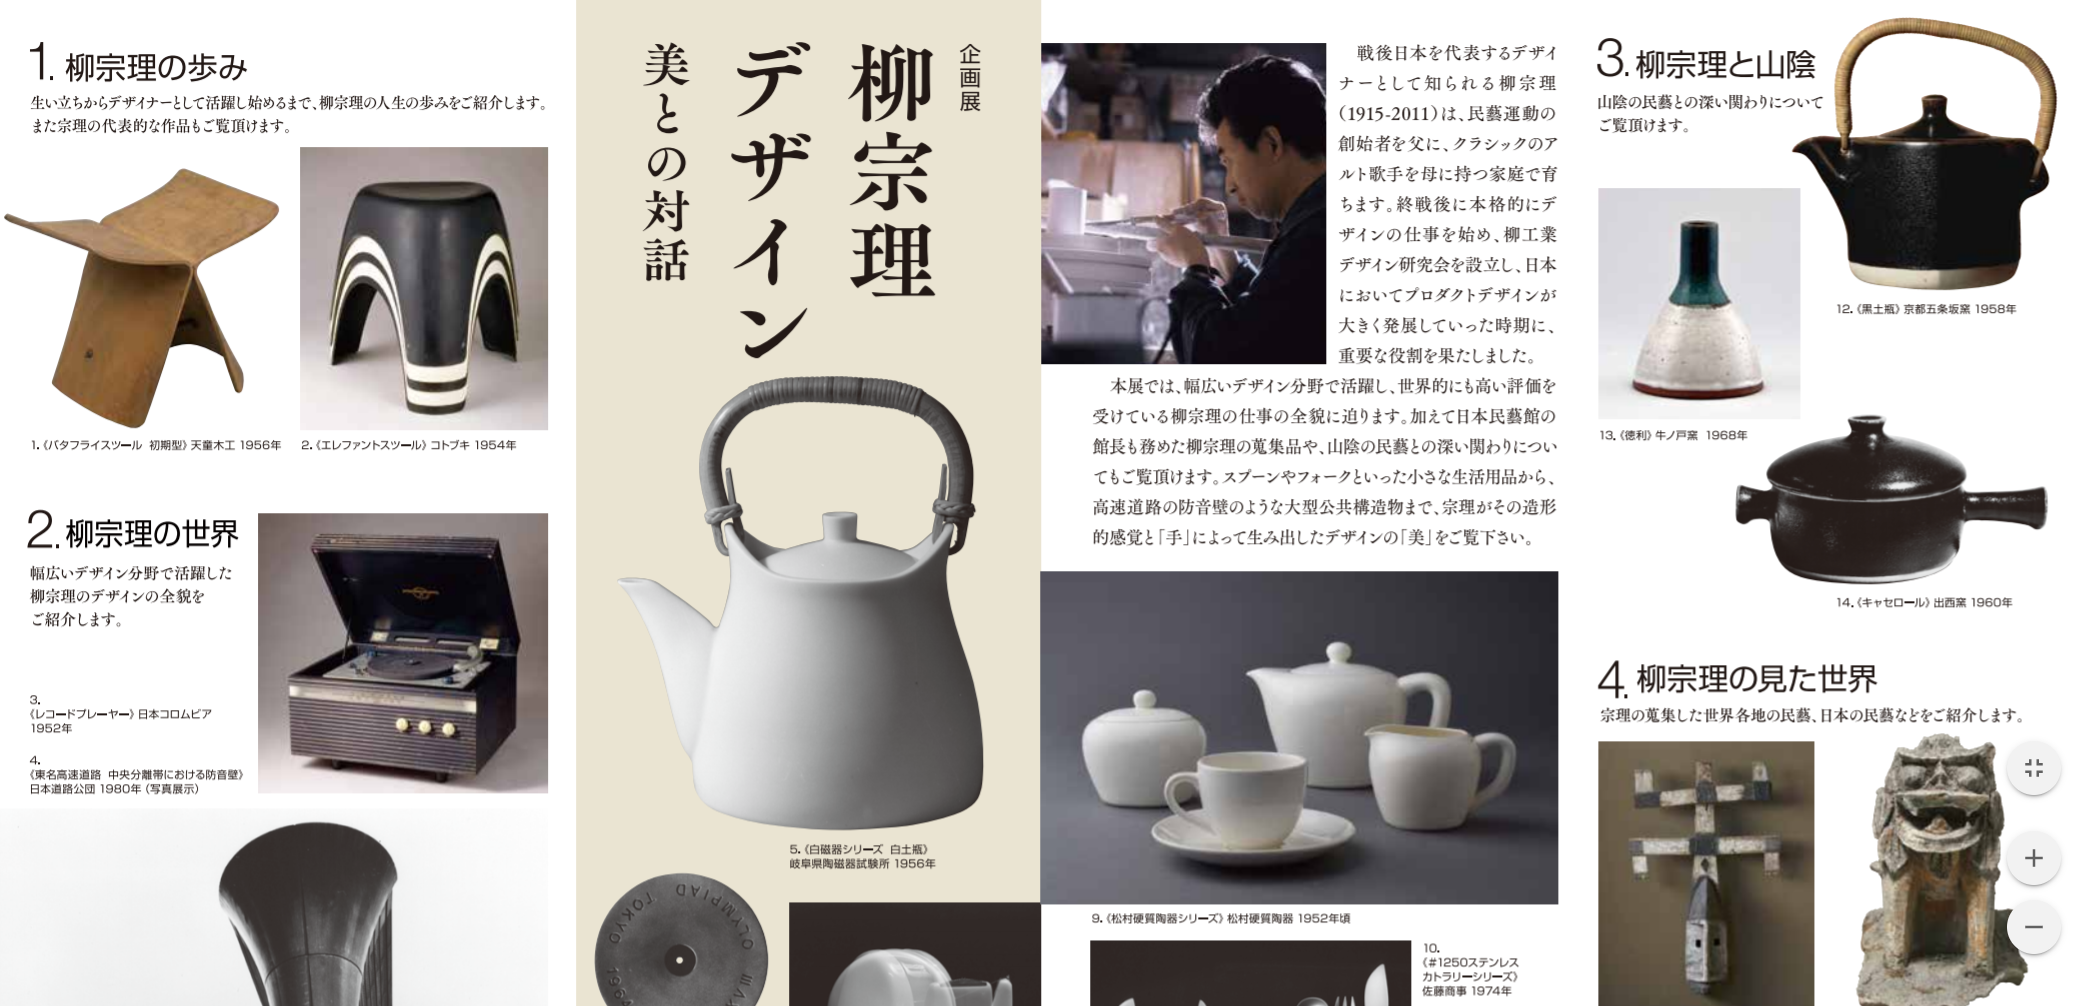 島根県立美術館にて「柳宗理デザイン 美との対話」が開催 | 名作家具とデザインの話